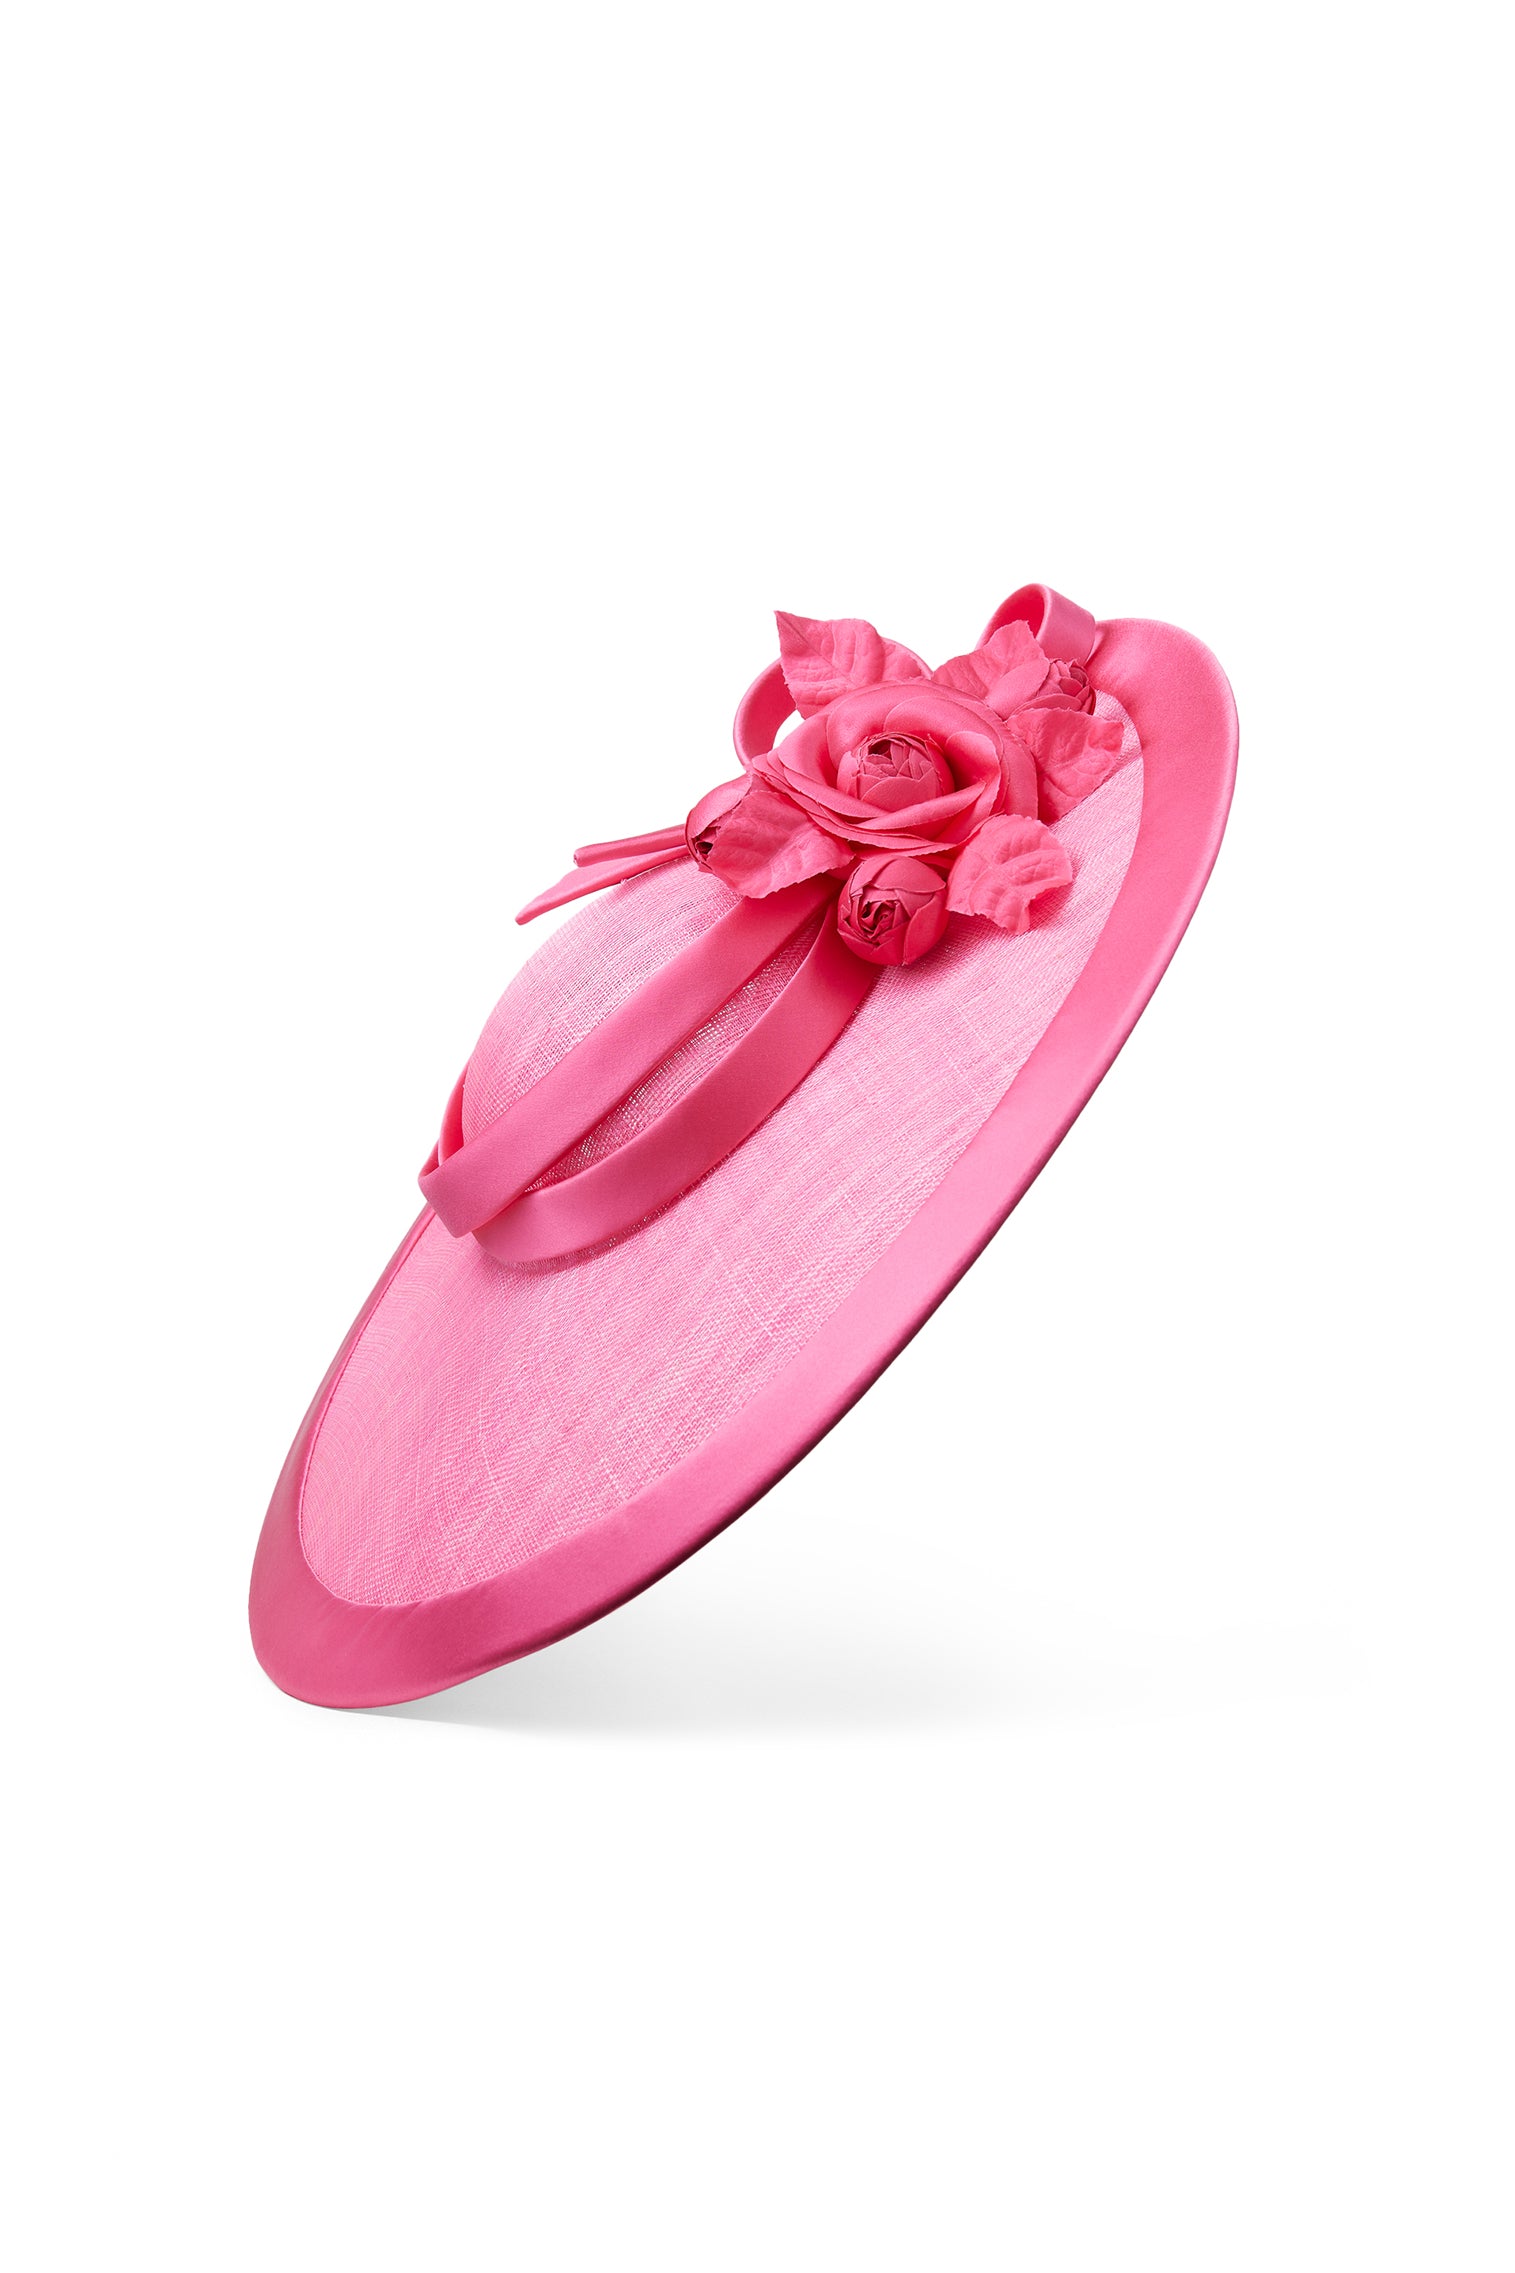 Jasmine Bright Pink Slice Hat - Kentucky Derby Hats for Women - Lock & Co. Hatters London UK